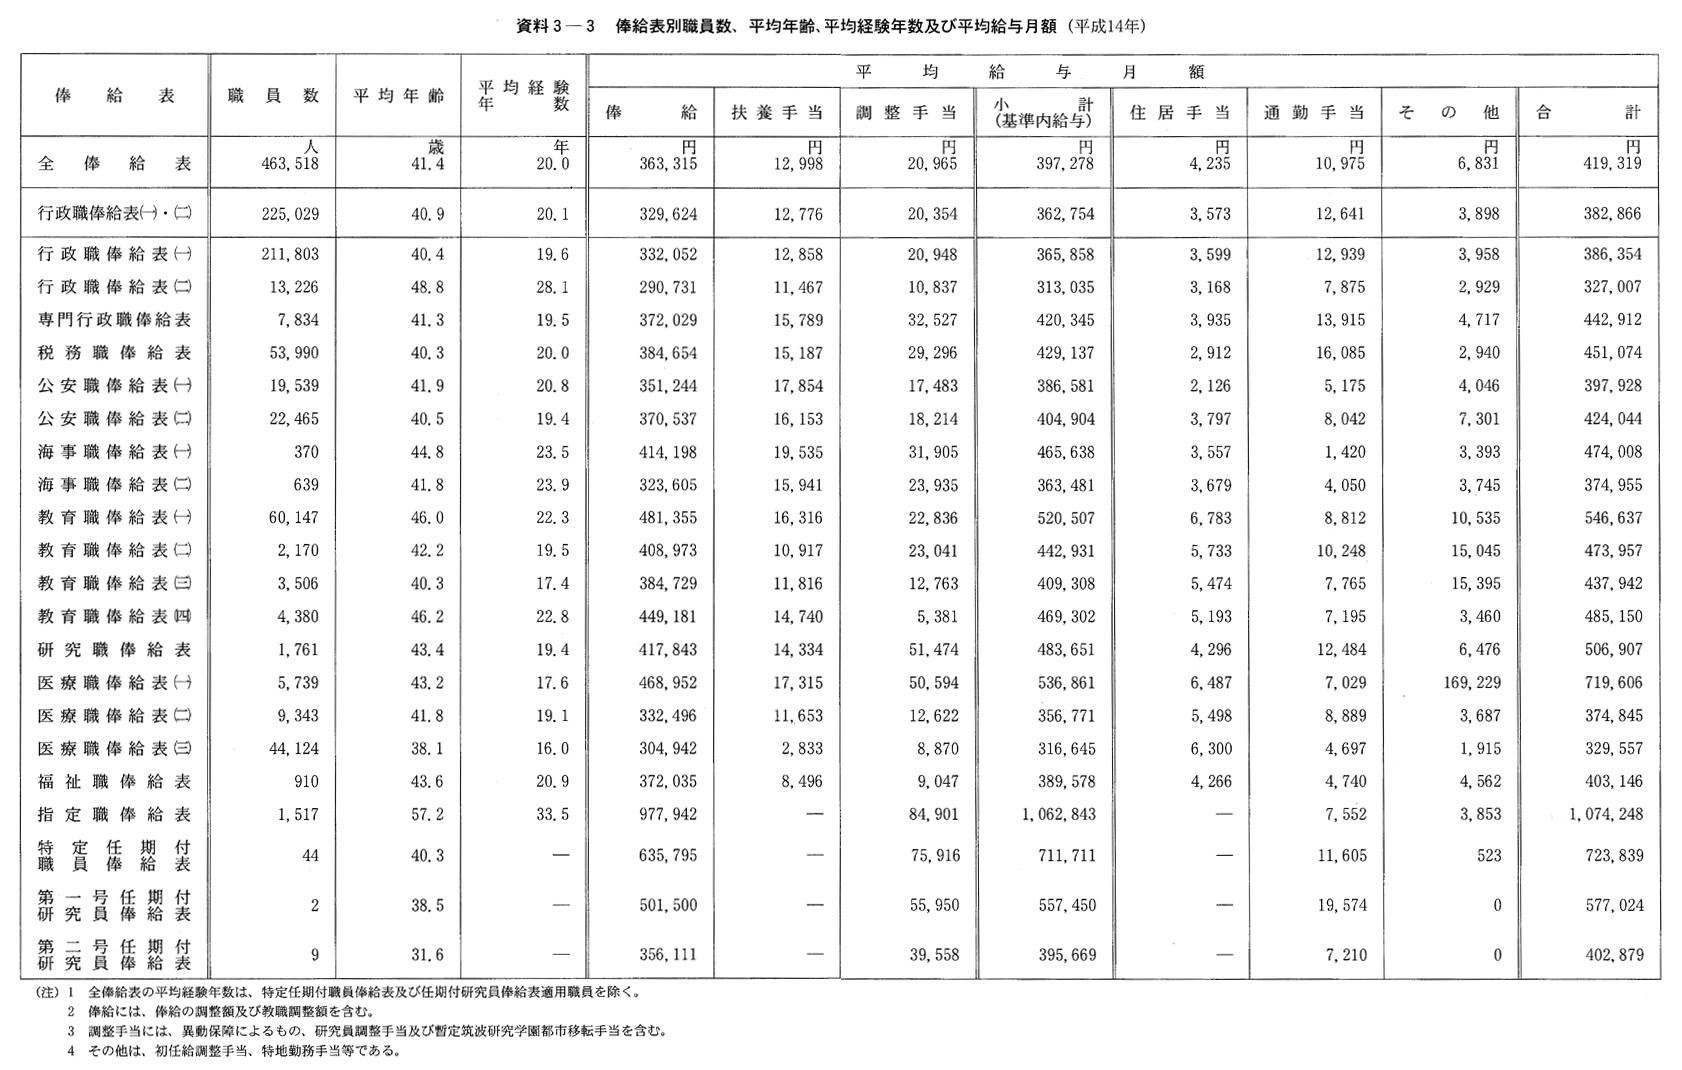 資料３-３　俸給表別職員数、平均年齢、平均経験年数及び平均給与月額(平成14年)